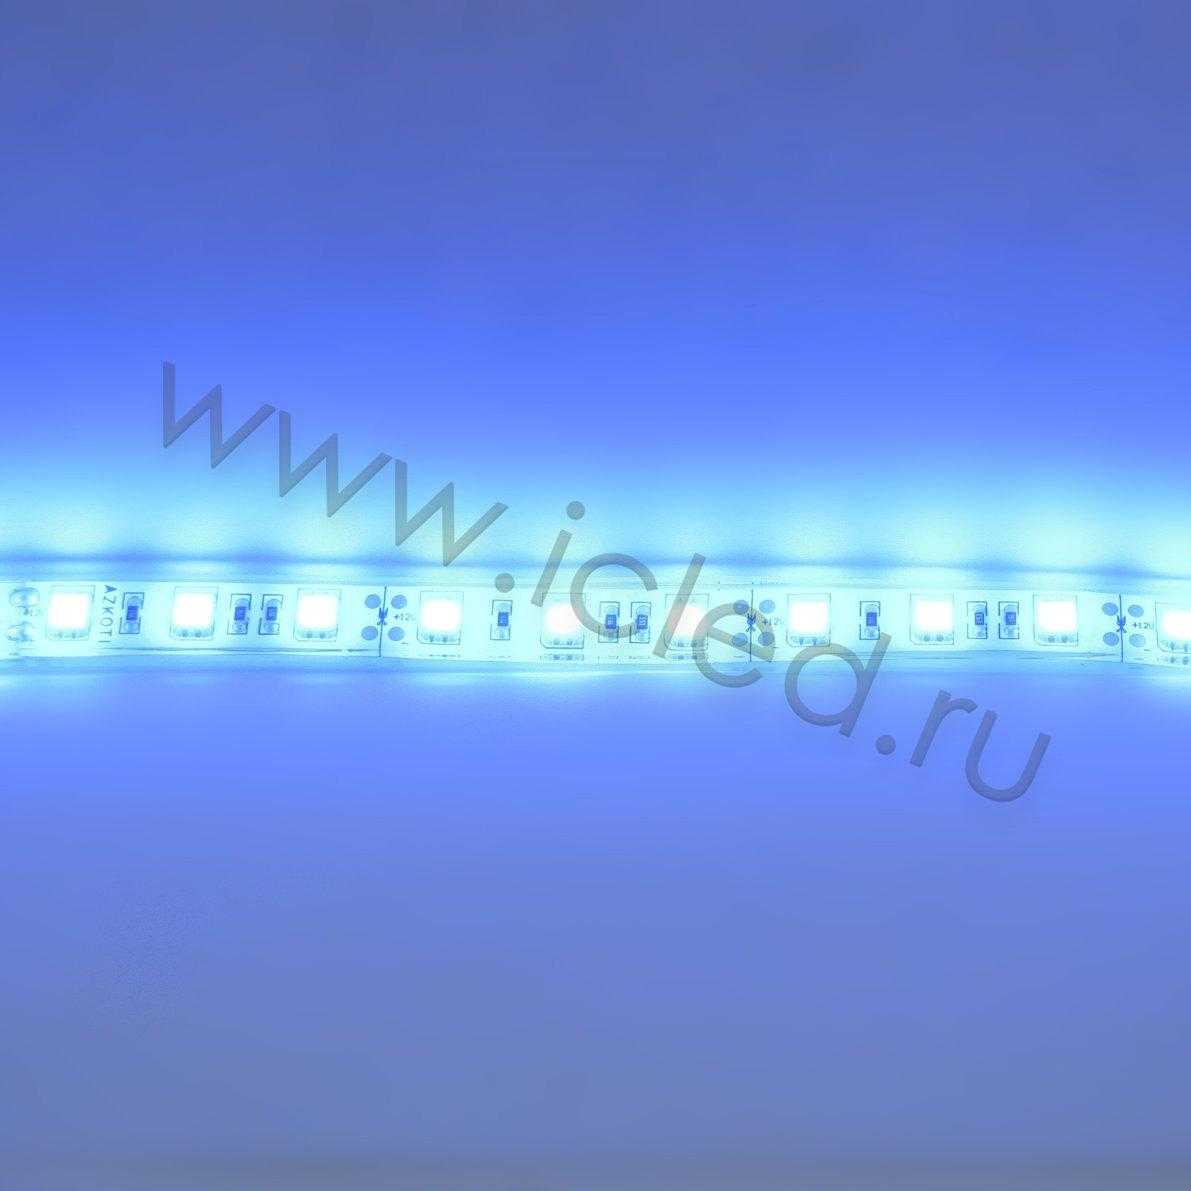 Влагозащищенные светодиодные ленты Светодиодная лента Standart PRO class, 5050, 60led/m, Blue, 12V, IP68 Icled